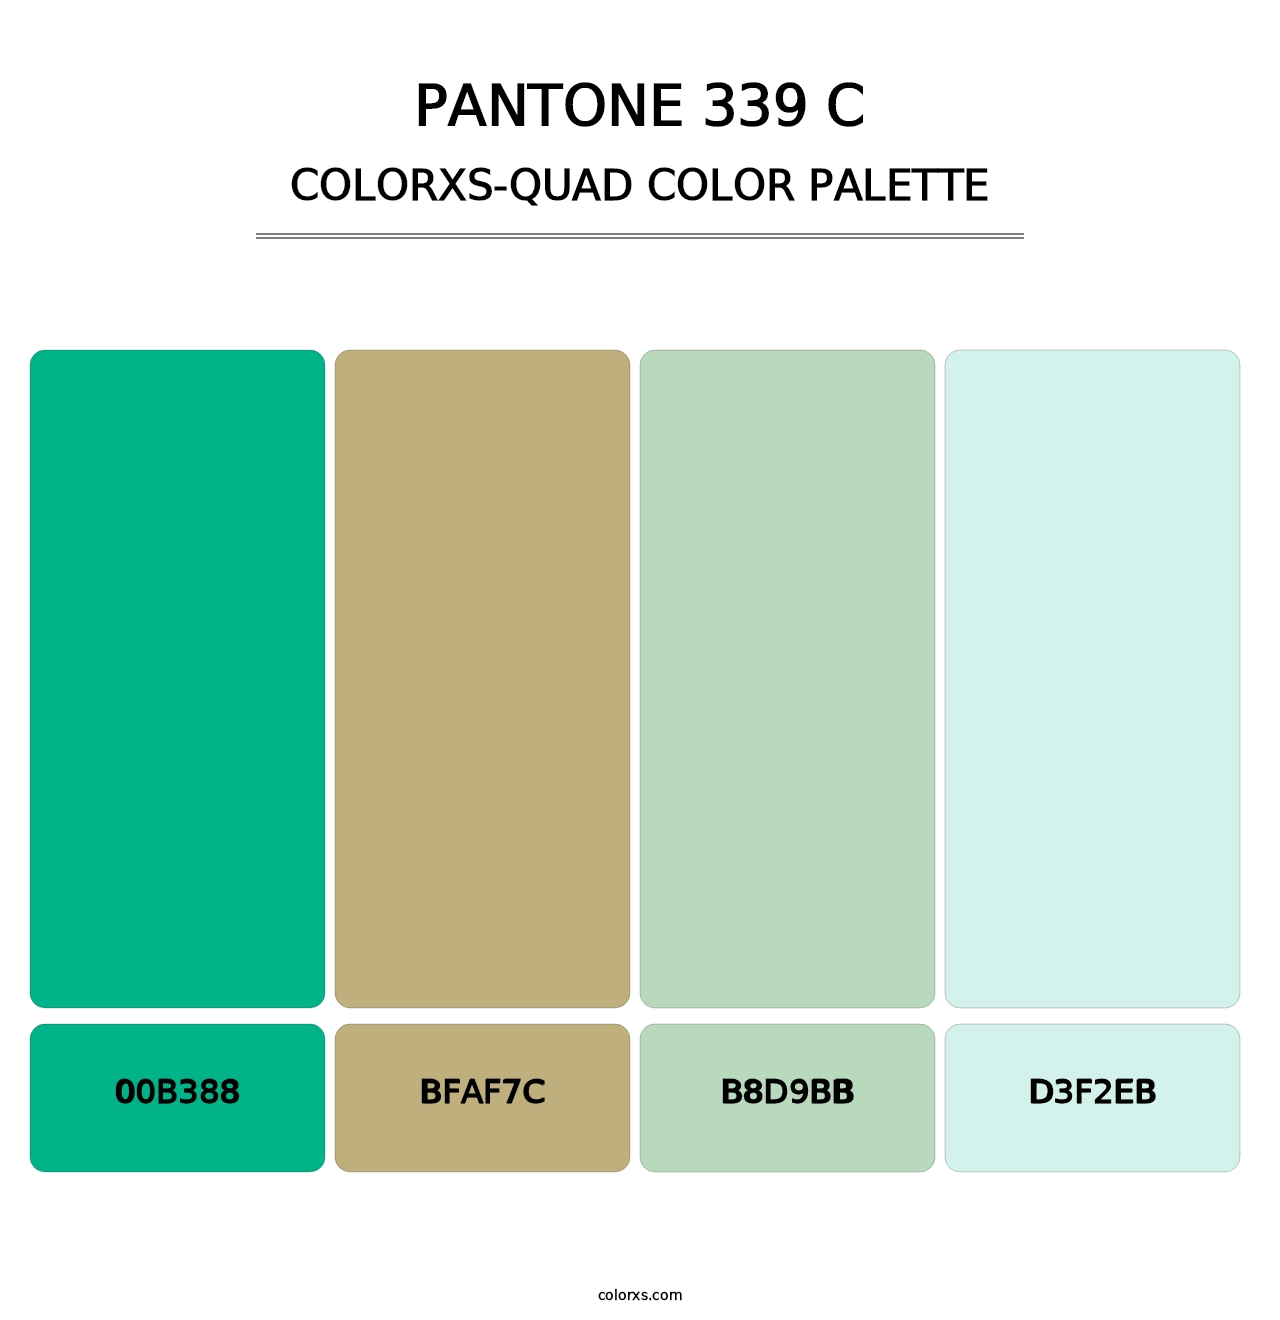 PANTONE 339 C - Colorxs Quad Palette